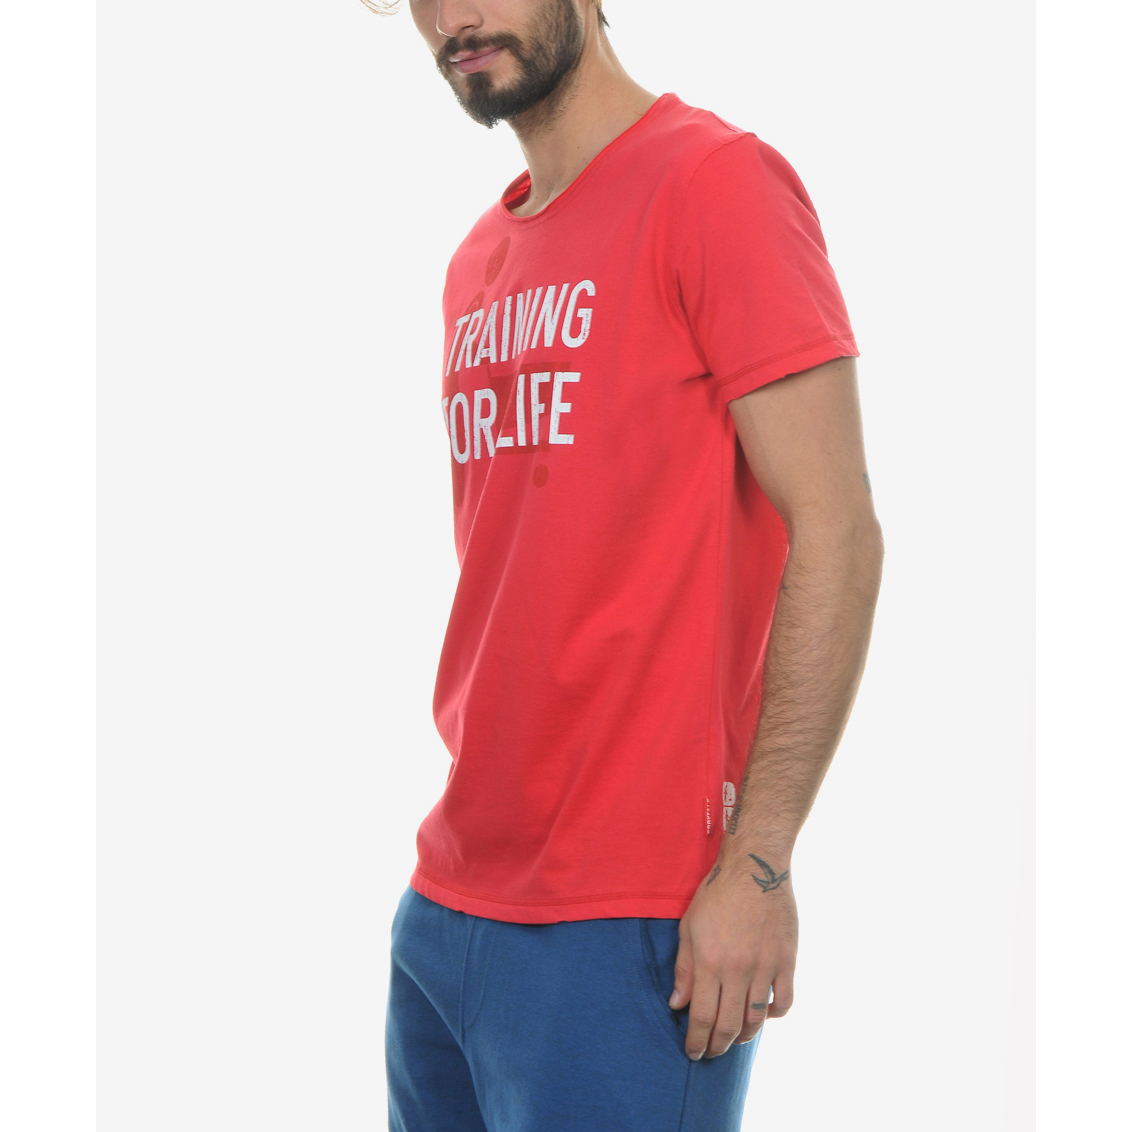 Ανδρικά/Ρούχα/Μπλούζες/Κοντομάνικες BODYTALK - Ανδρική μπλούζα BODYTALK κόκκινη